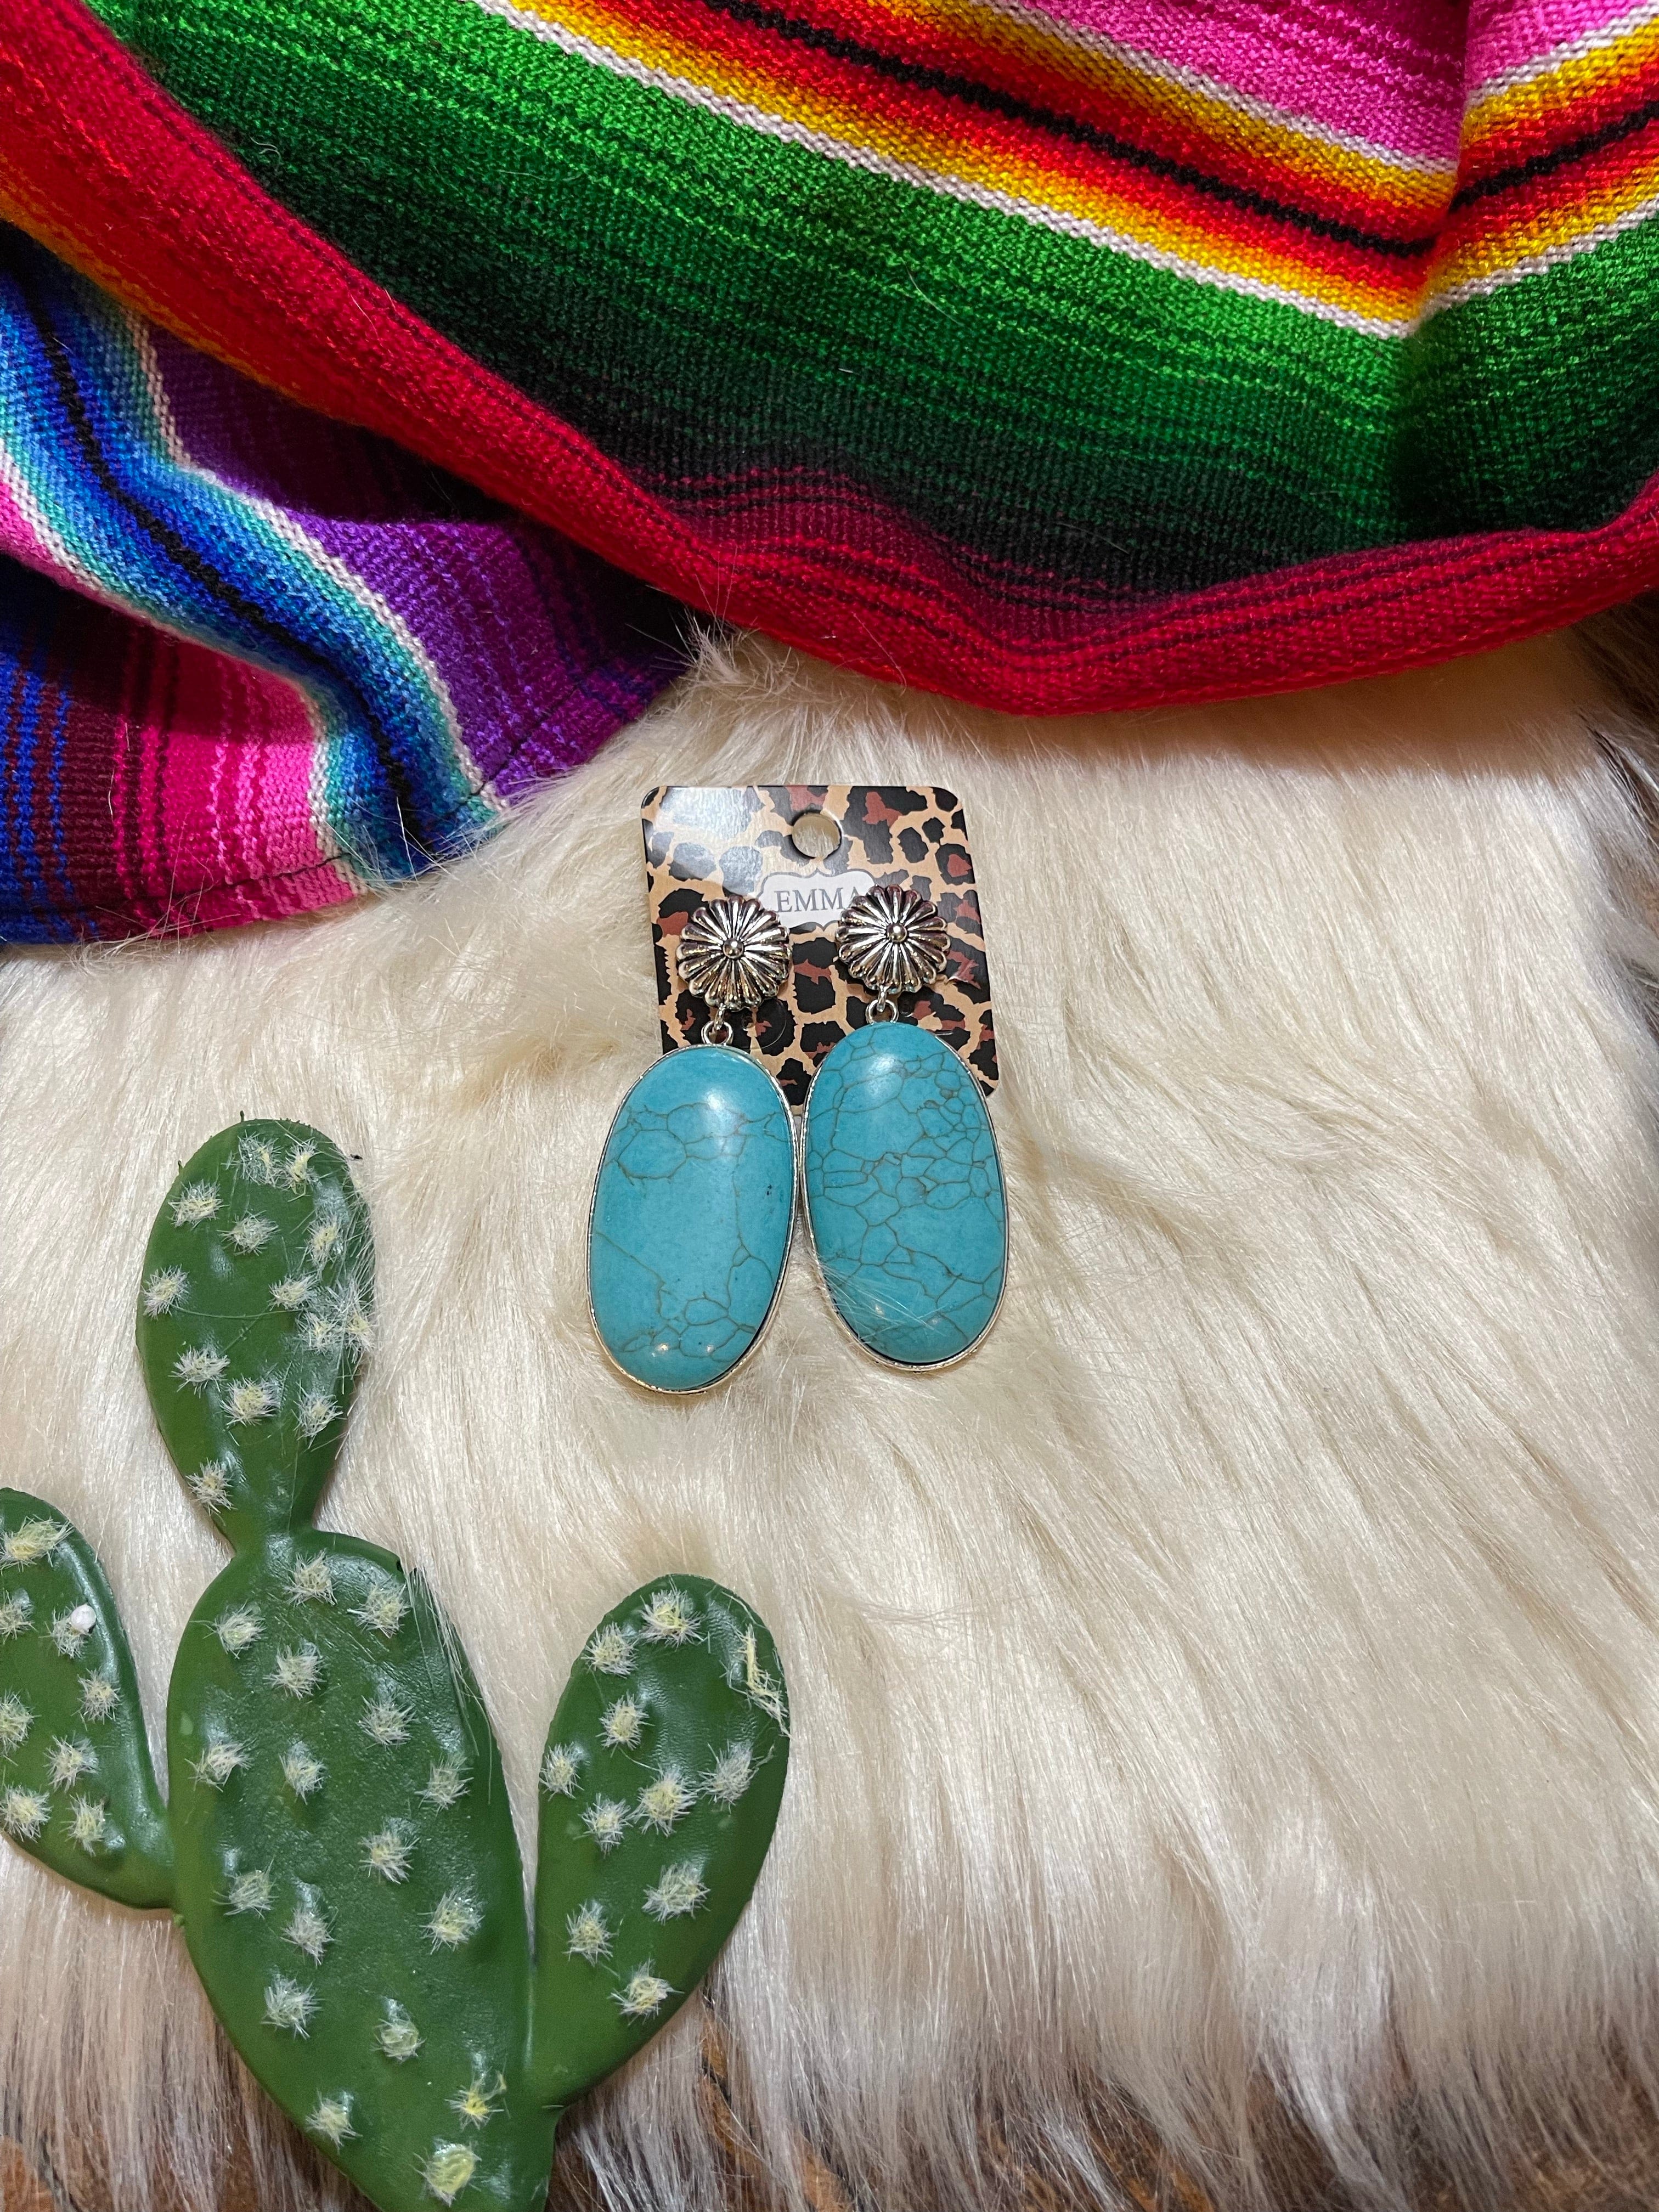 Amazon.com: Turquoise Bohemian Dangle Metal Large Oval Earrings Statement  Teardrop Earrings Western Earrings For Women Girls Jewelry (Green):  Clothing, Shoes & Jewelry